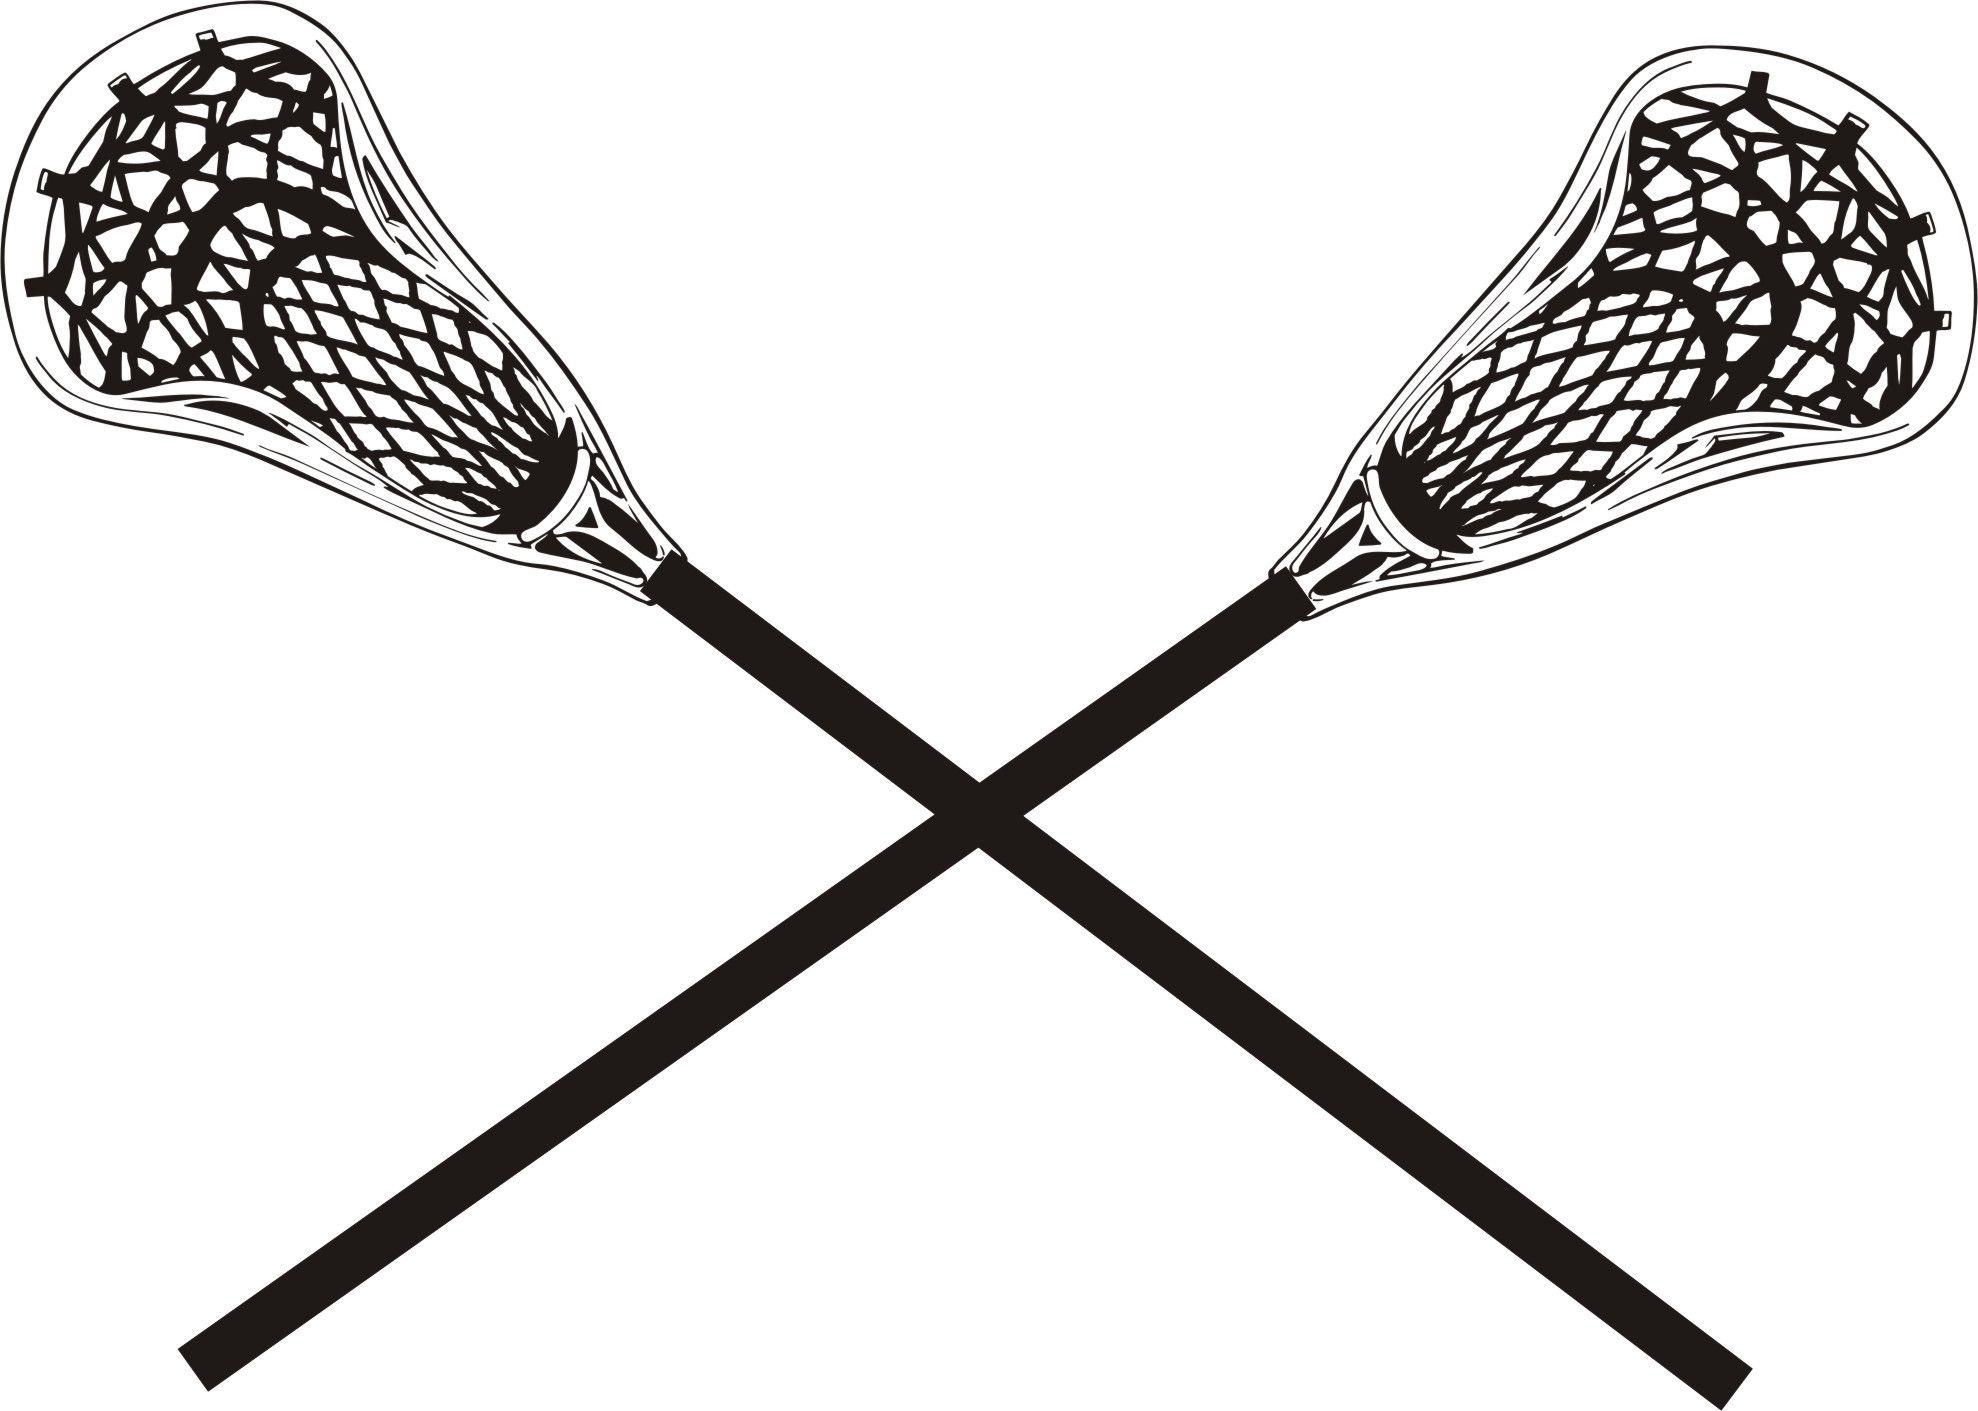 Lacrosse Logo - Girls lacrosse faces tough lost against Norwin